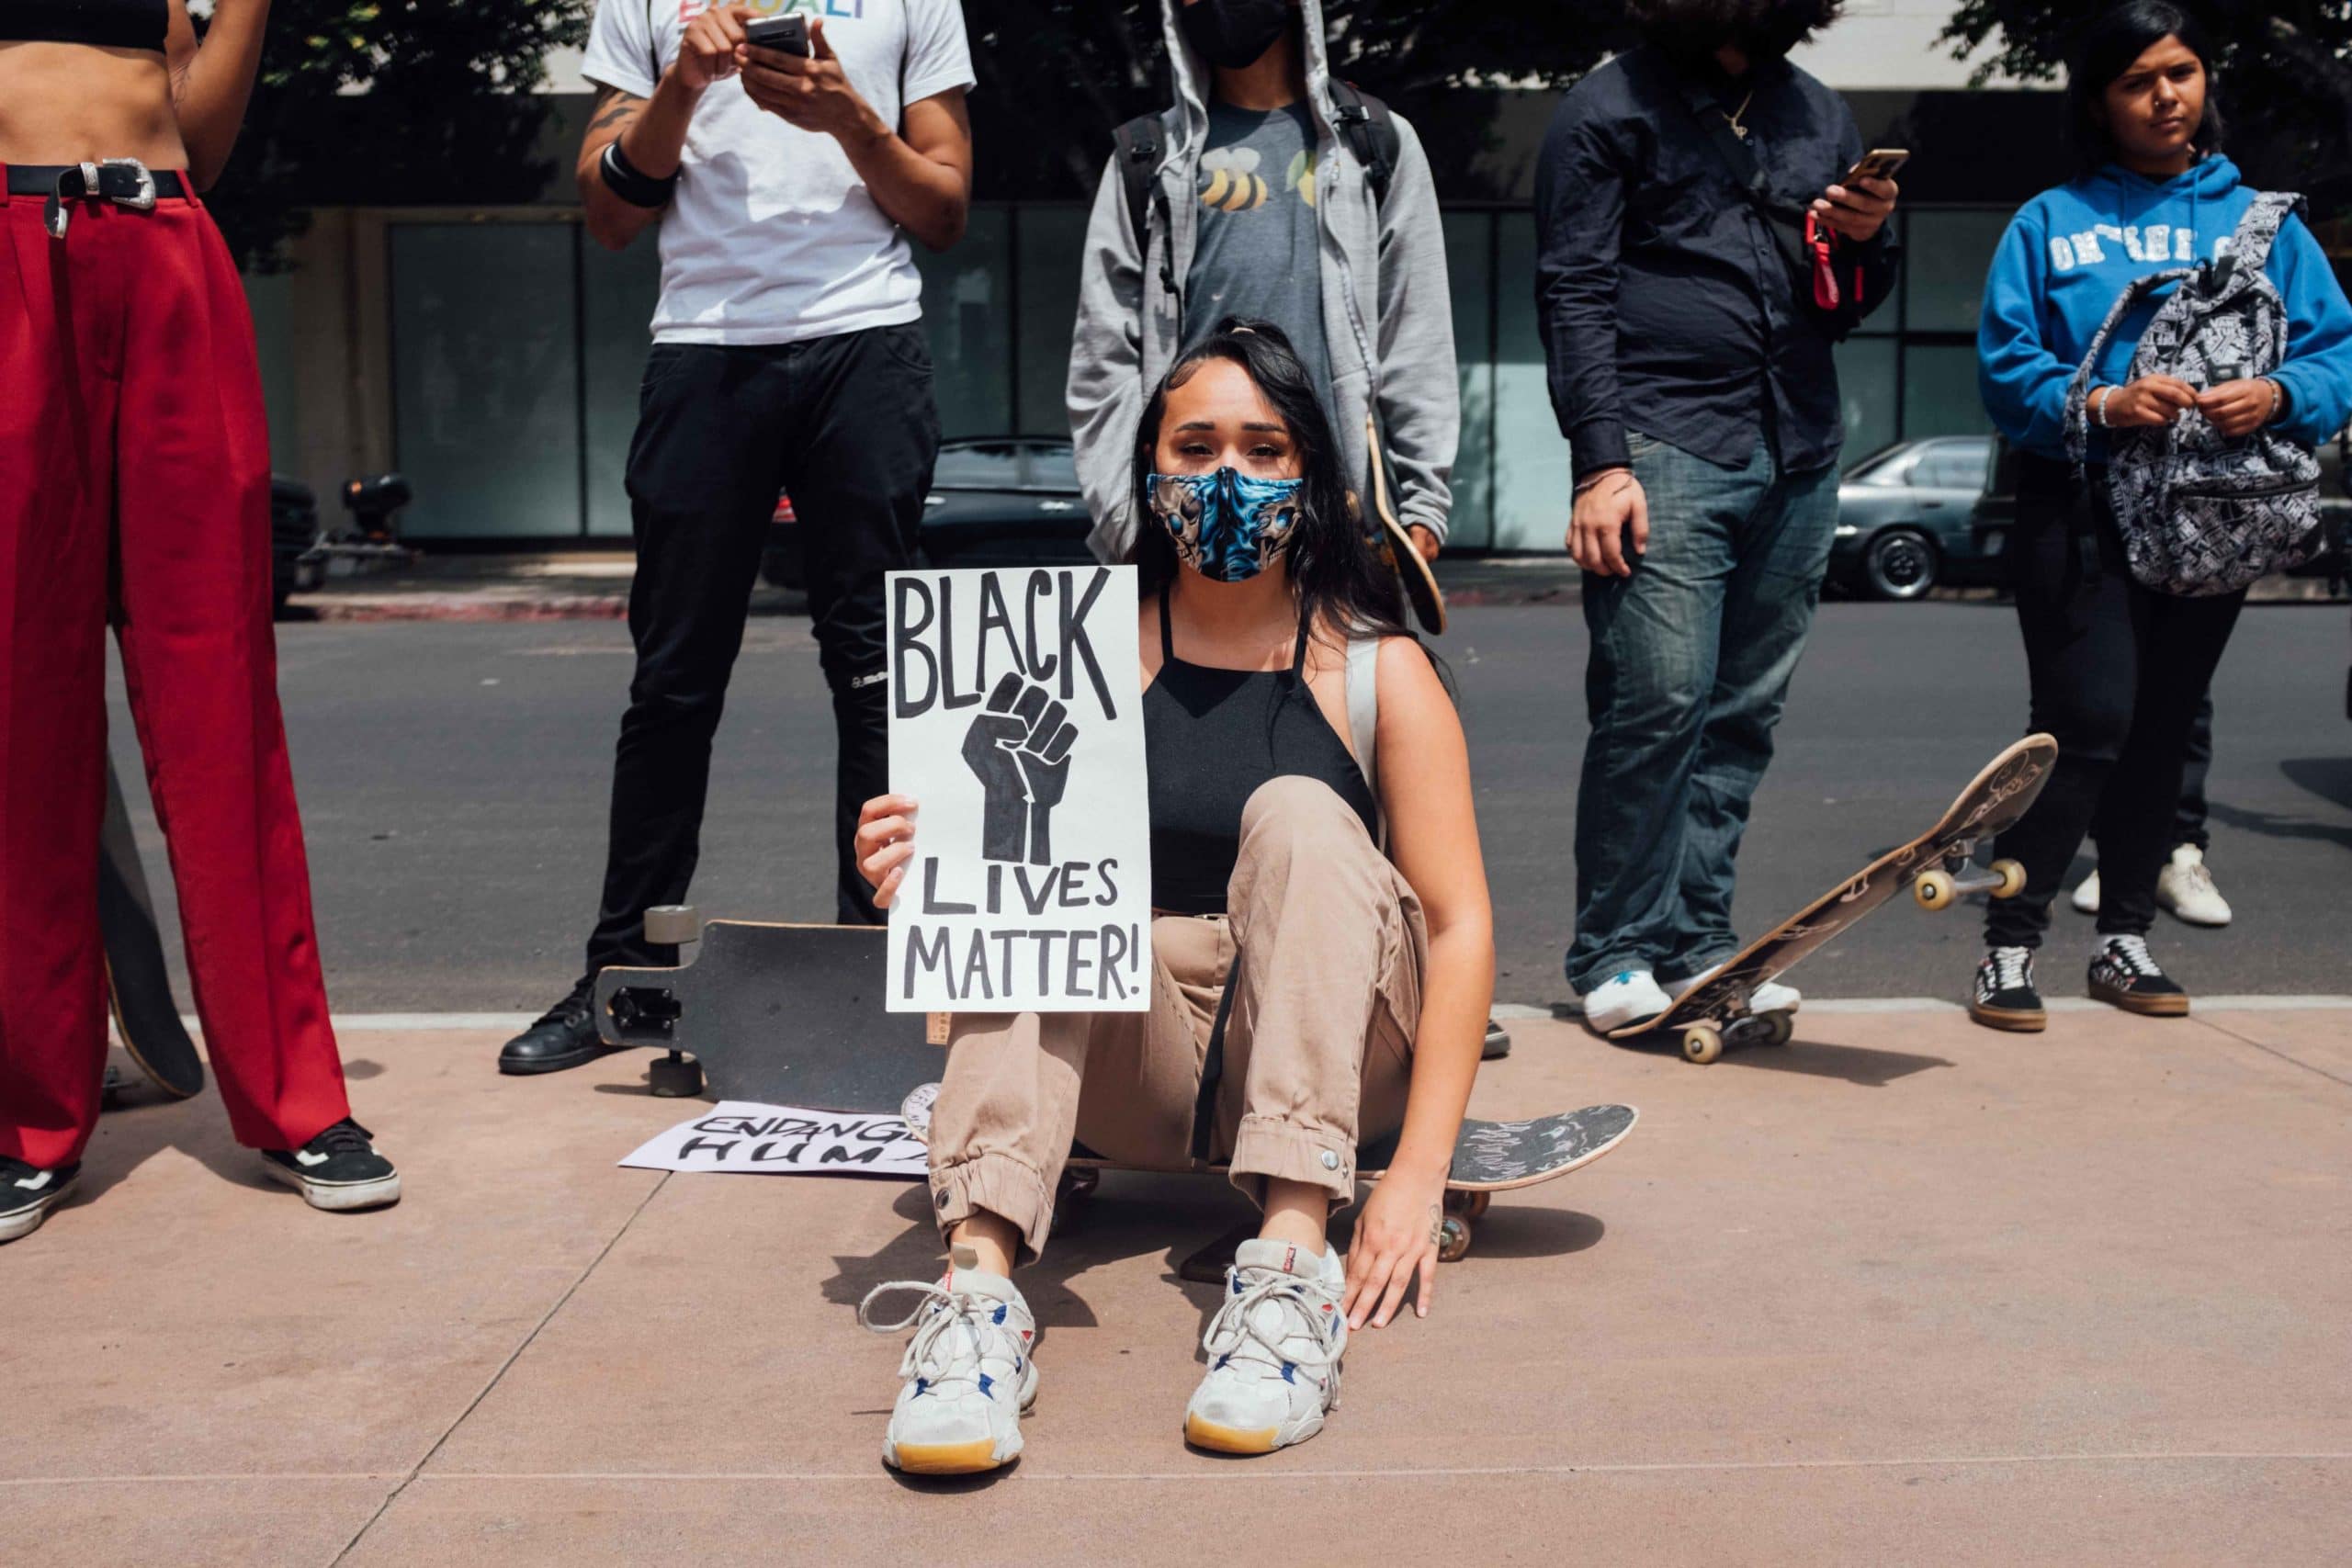 Le monde du skate célèbre sa diversité, dans le sillage de Black Lives  Matter